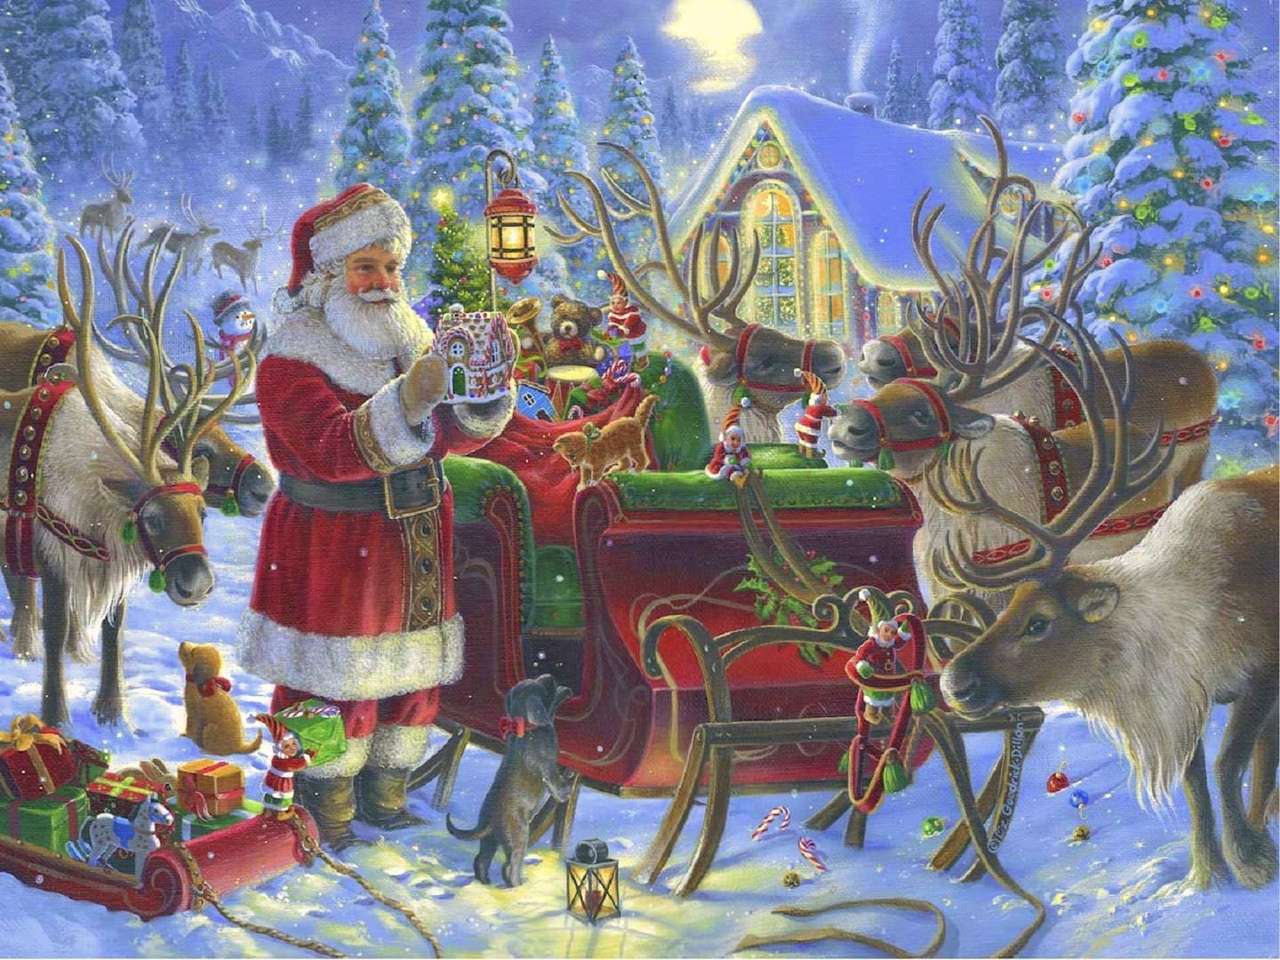 1000 Piece Christmas Jigsaw Puzzle Santa's Sleigh Ride on Christmas Eve 05601 